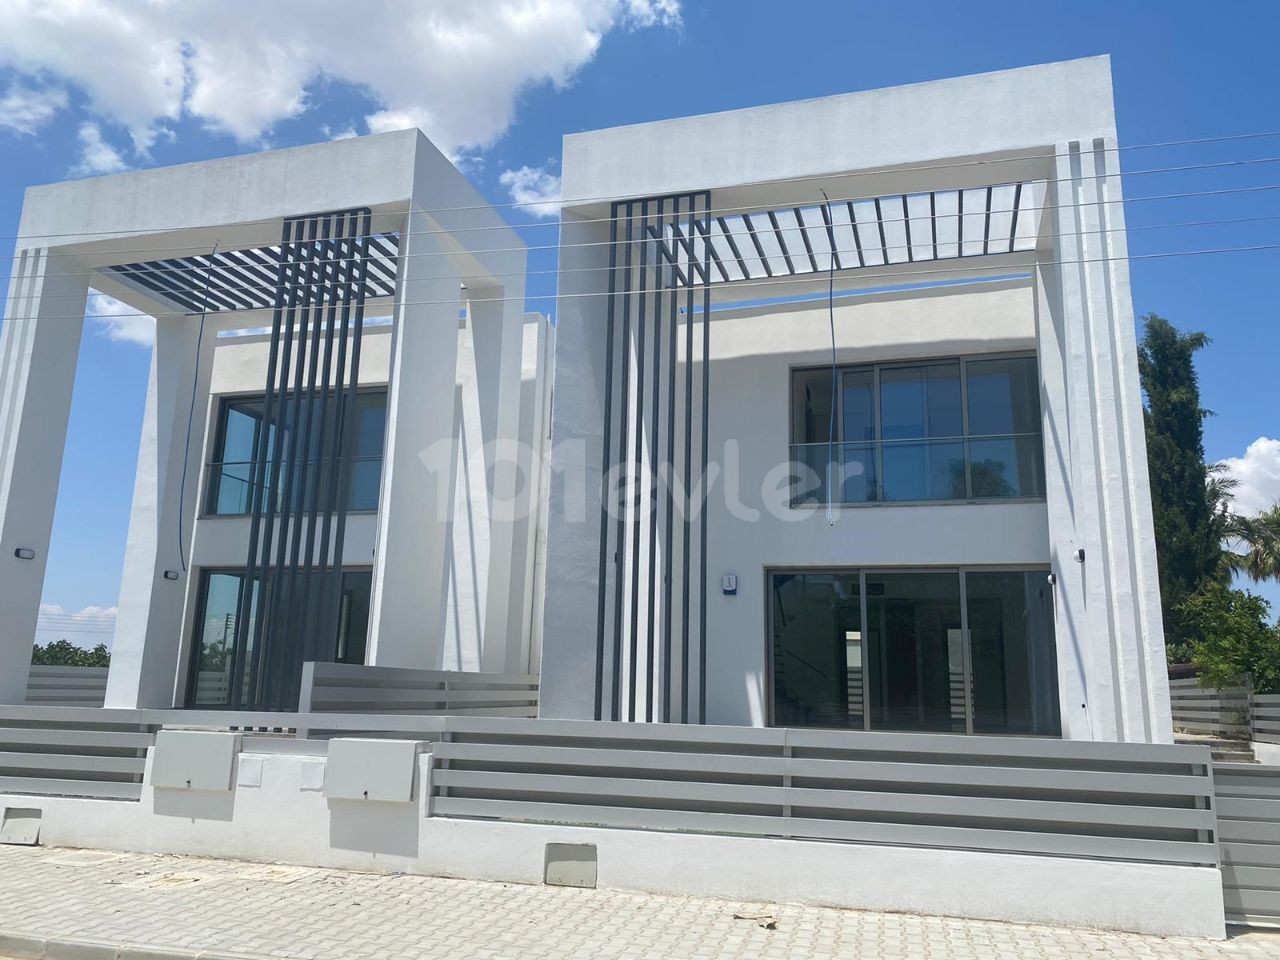 Brandneue Villen, die in Yenikent einen Unterschied machen, hochwertige Verarbeitung und mazle 4+1, 210m2 Super Luxusvillen 190,000 stg ** 